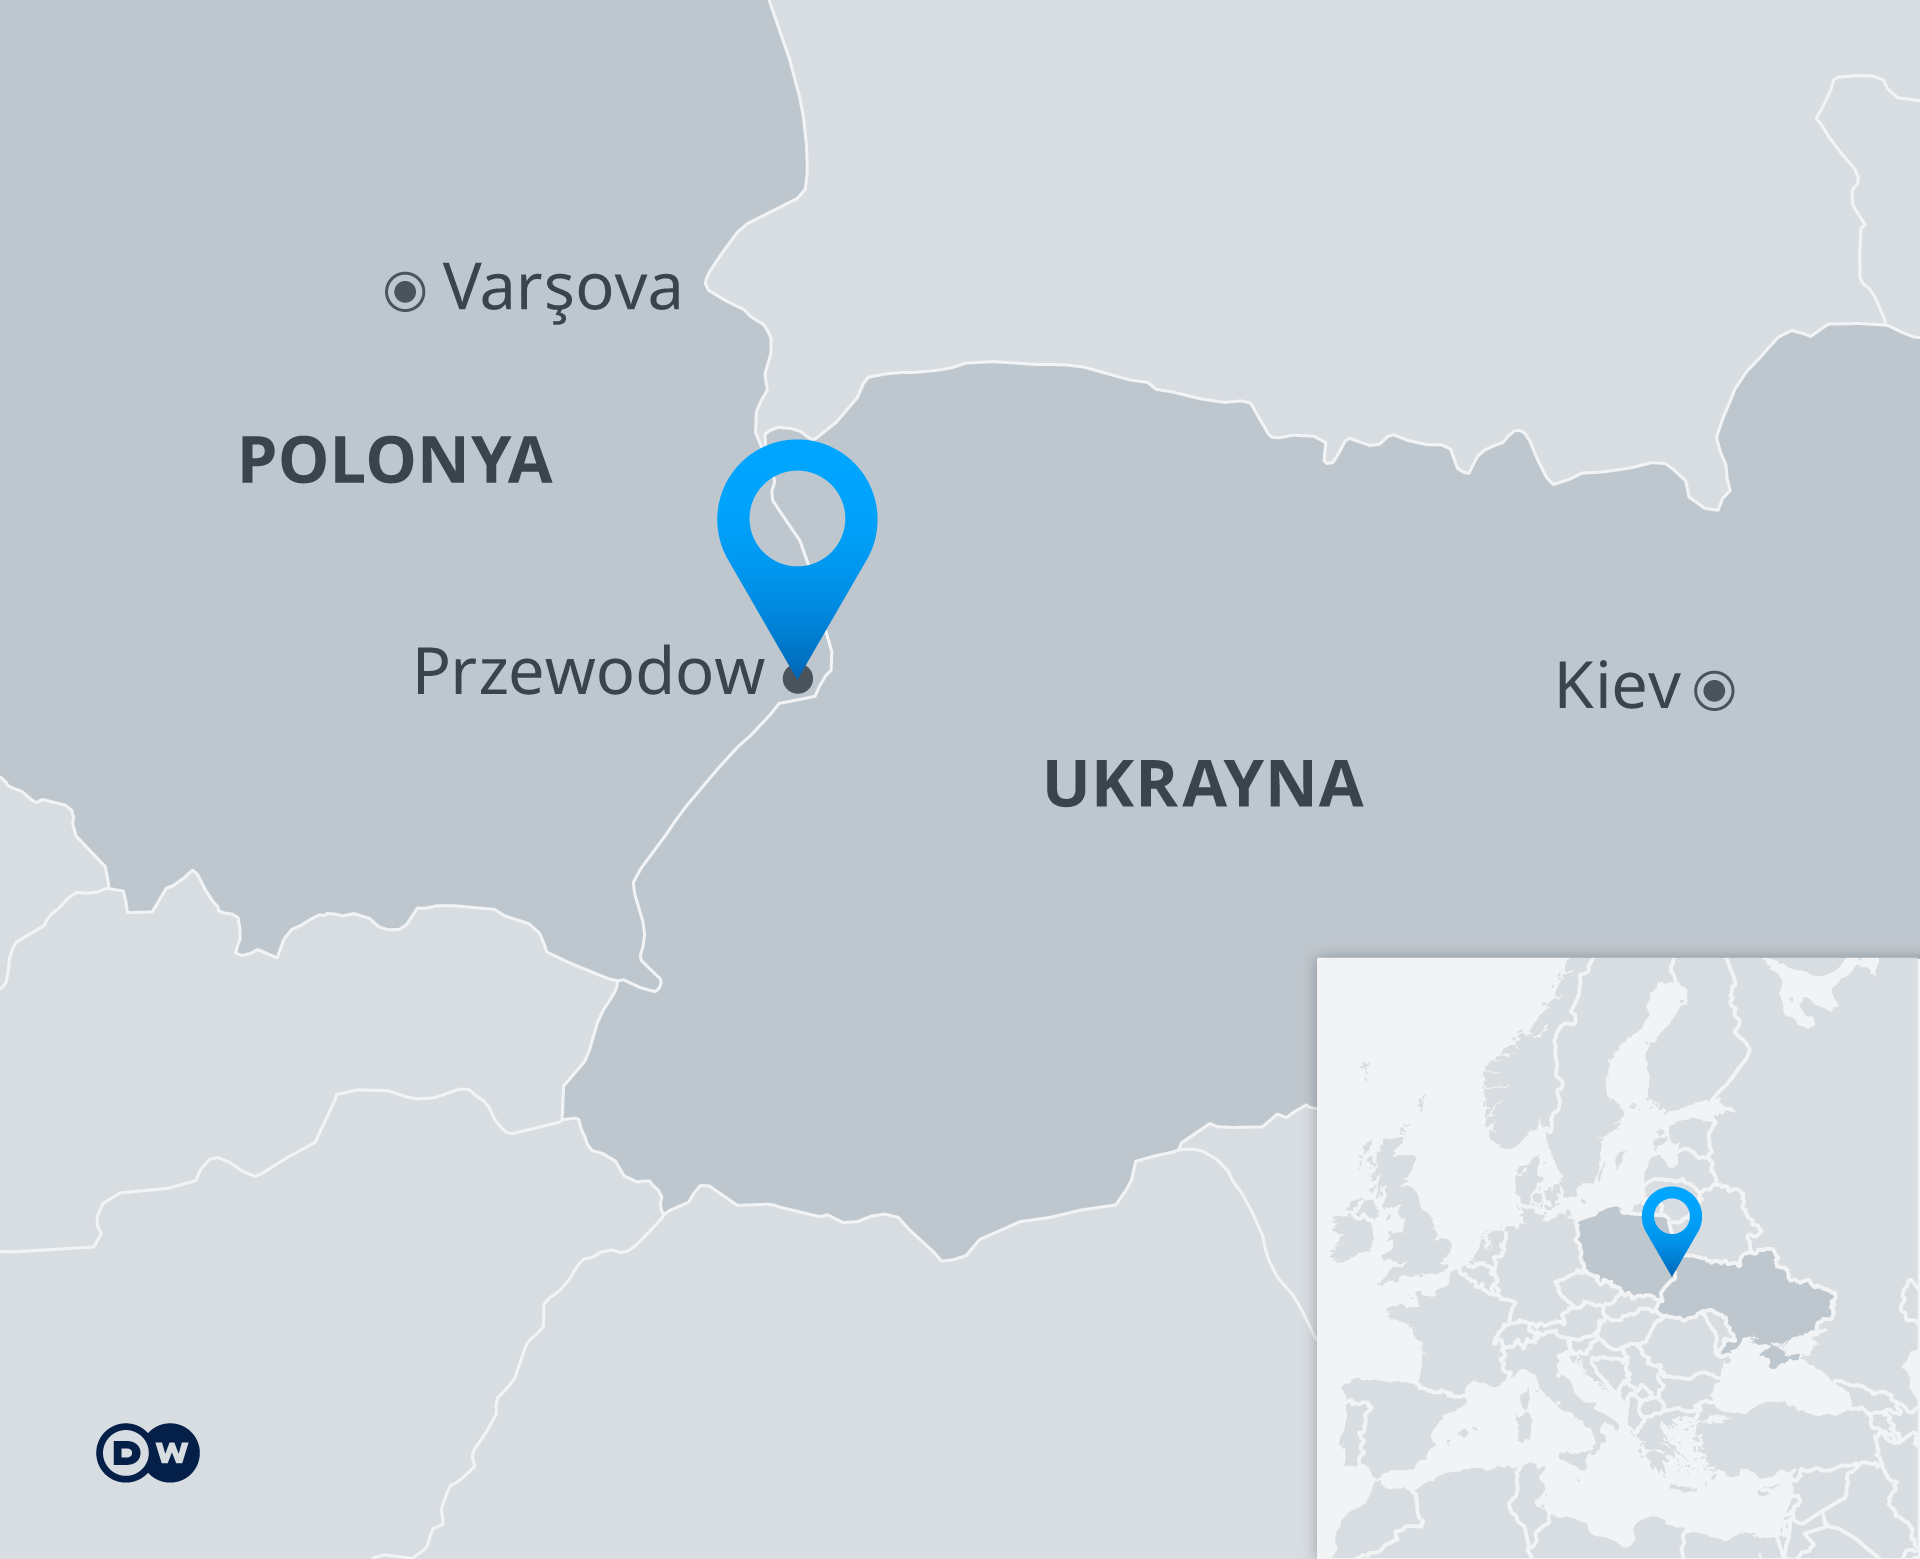 Füzenin isabet ettiği, Polonya'nın Przewodow Köyü'nün harita üzerindeki konumu